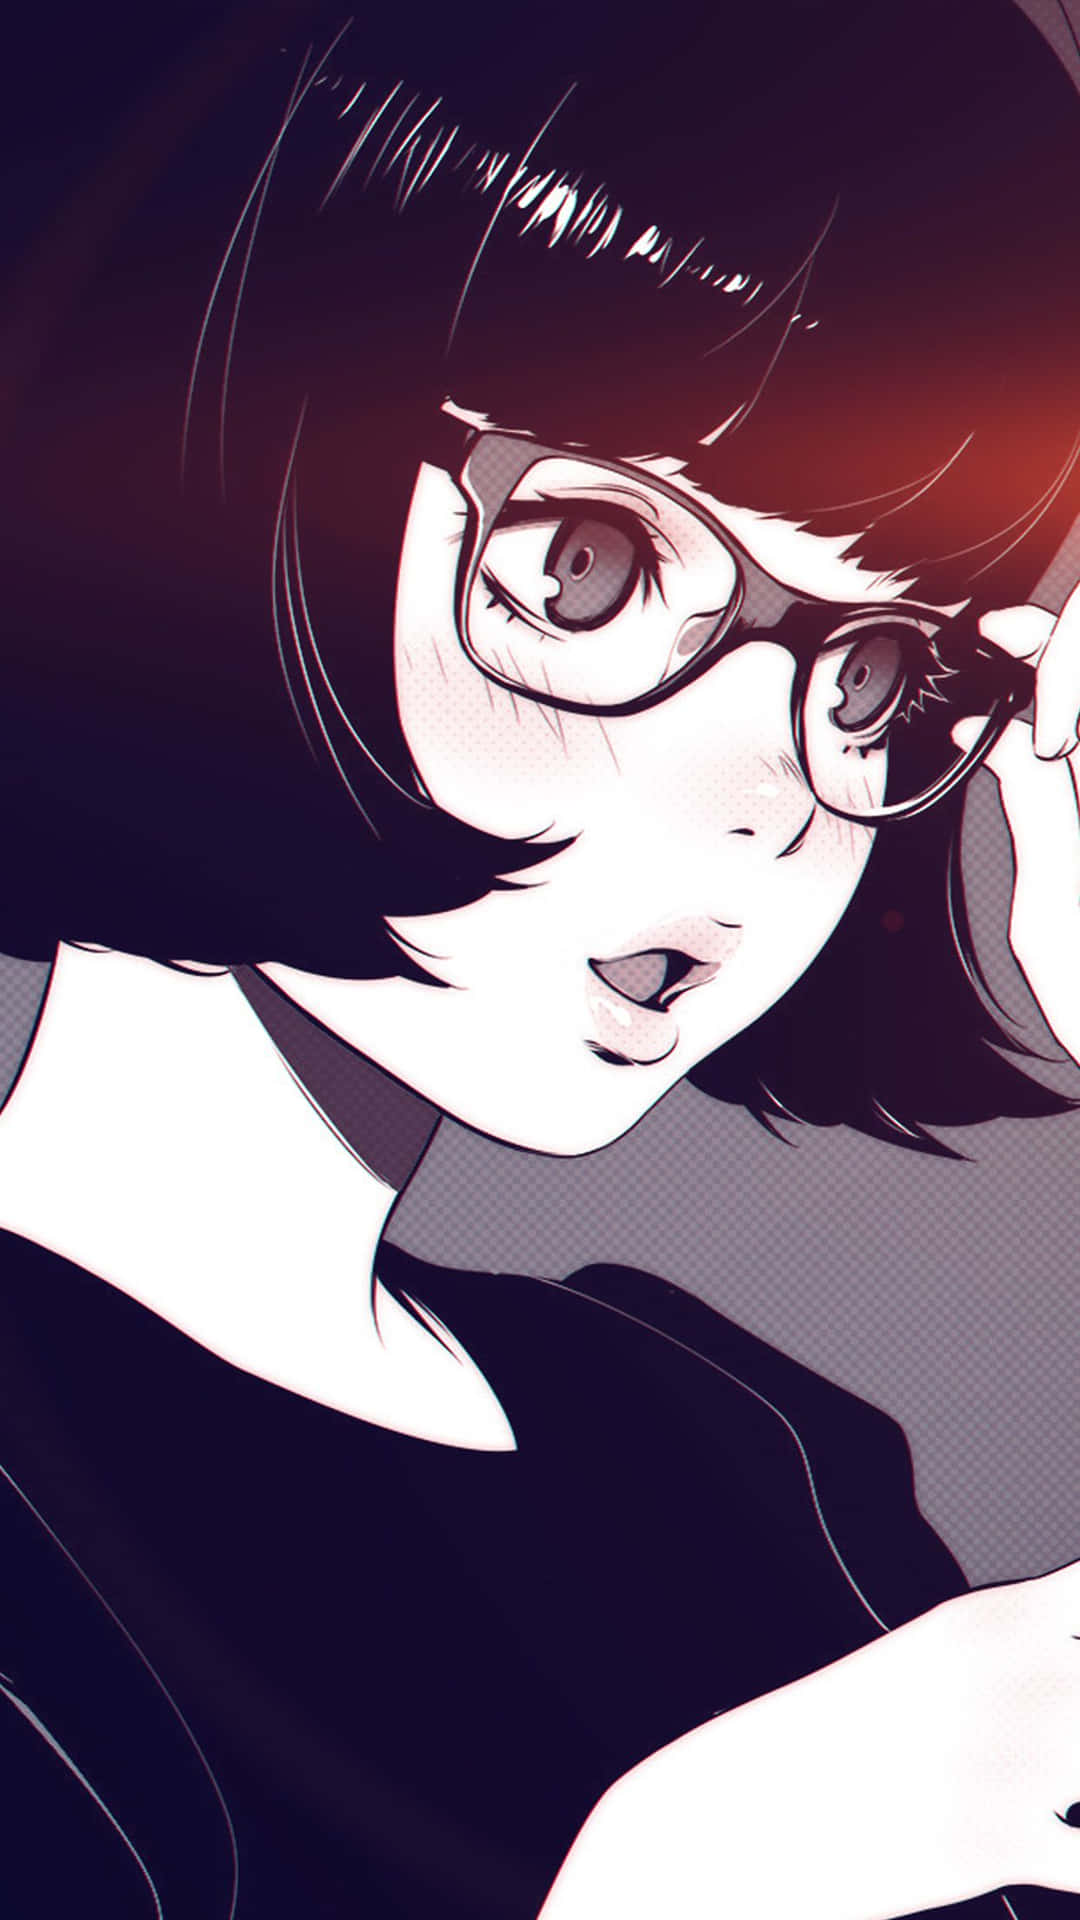 Dark Aesthetic Anime Pfp Girl With Eyeglass Wallpaper